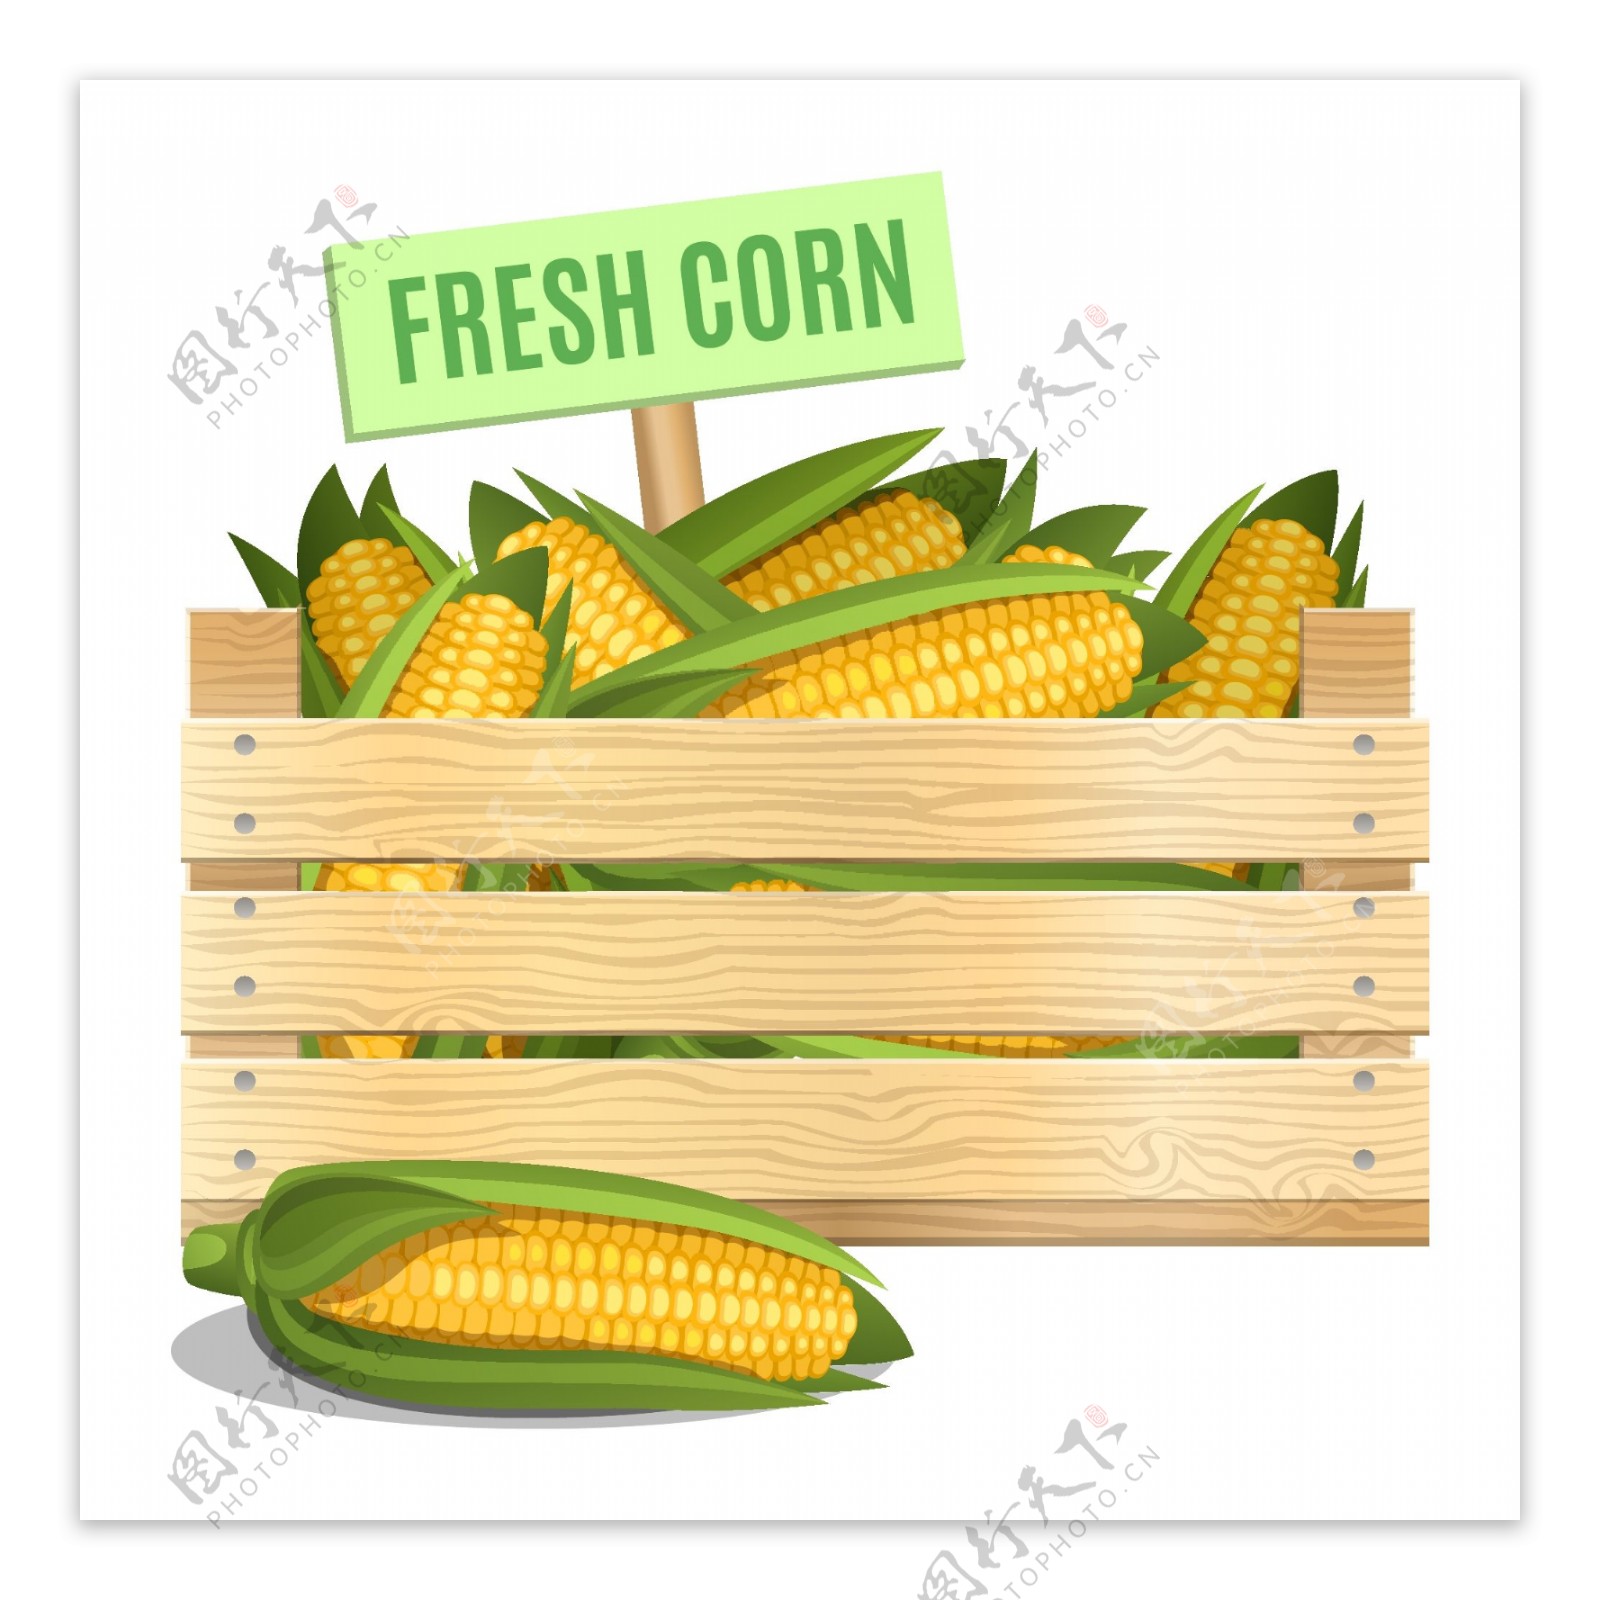 新鲜玉米图案矢量素材下载